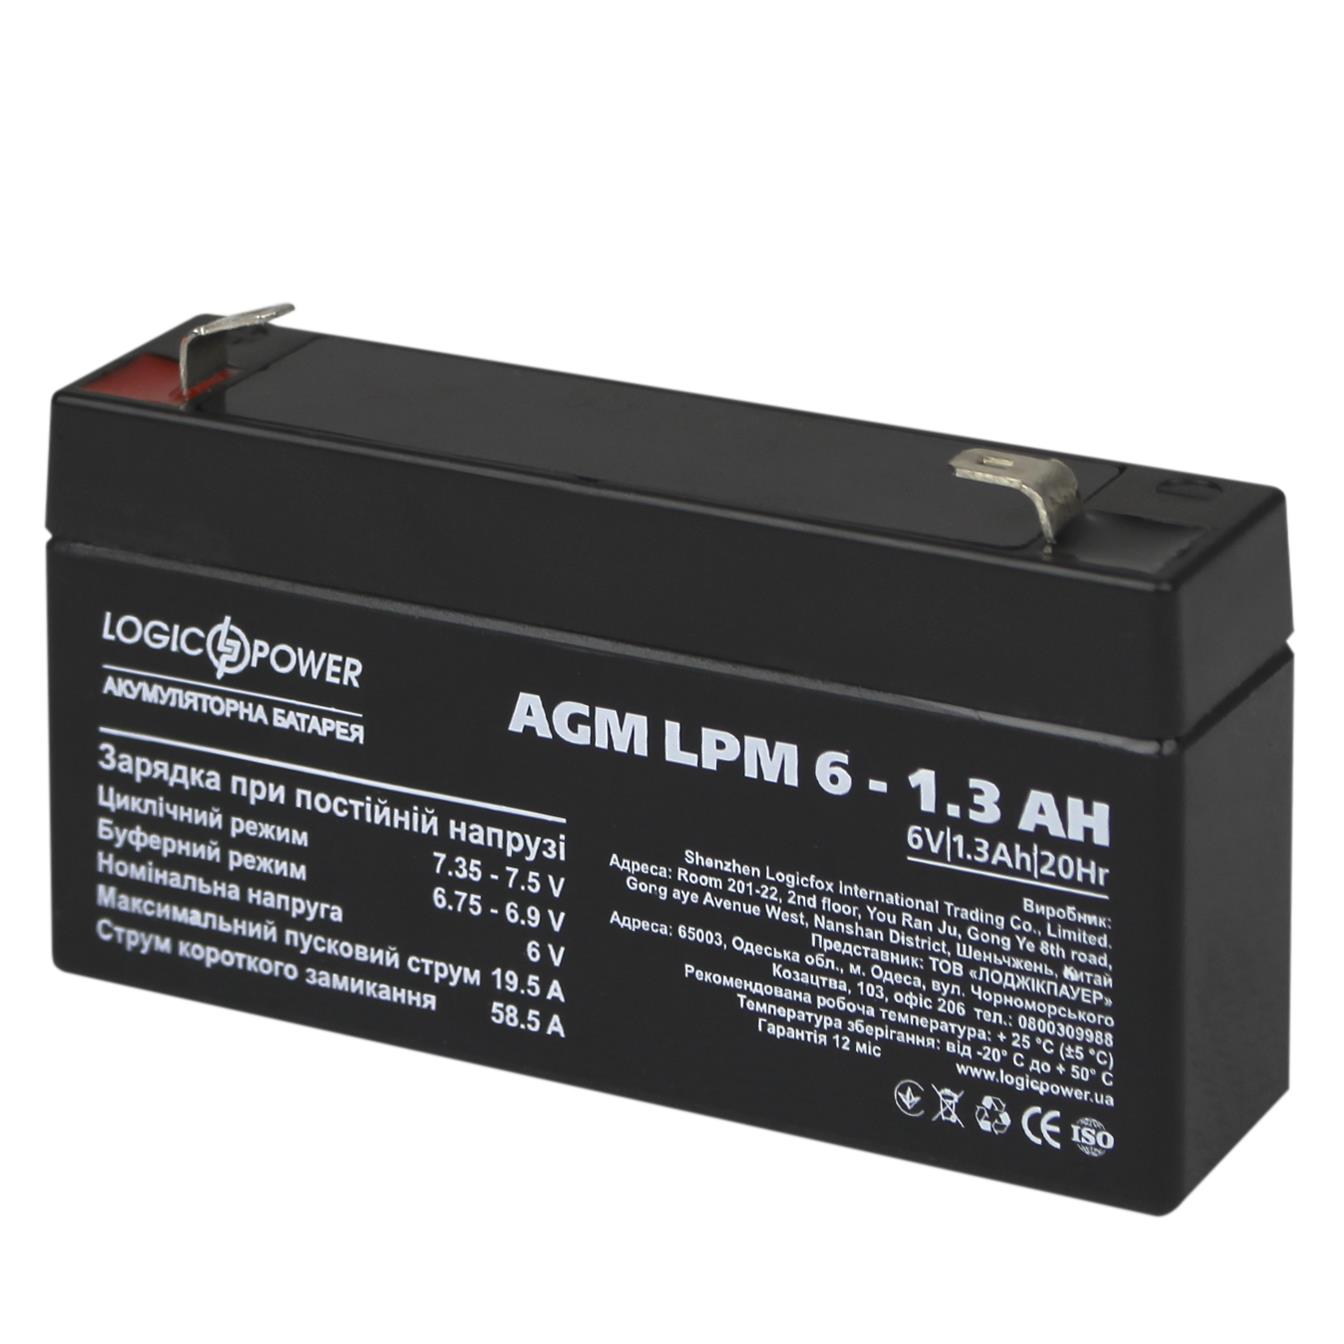 Відгуки акумулятор свинцево-кислотний LogicPower AGM LPM 6V - 1.3 Ah (4157) в Україні